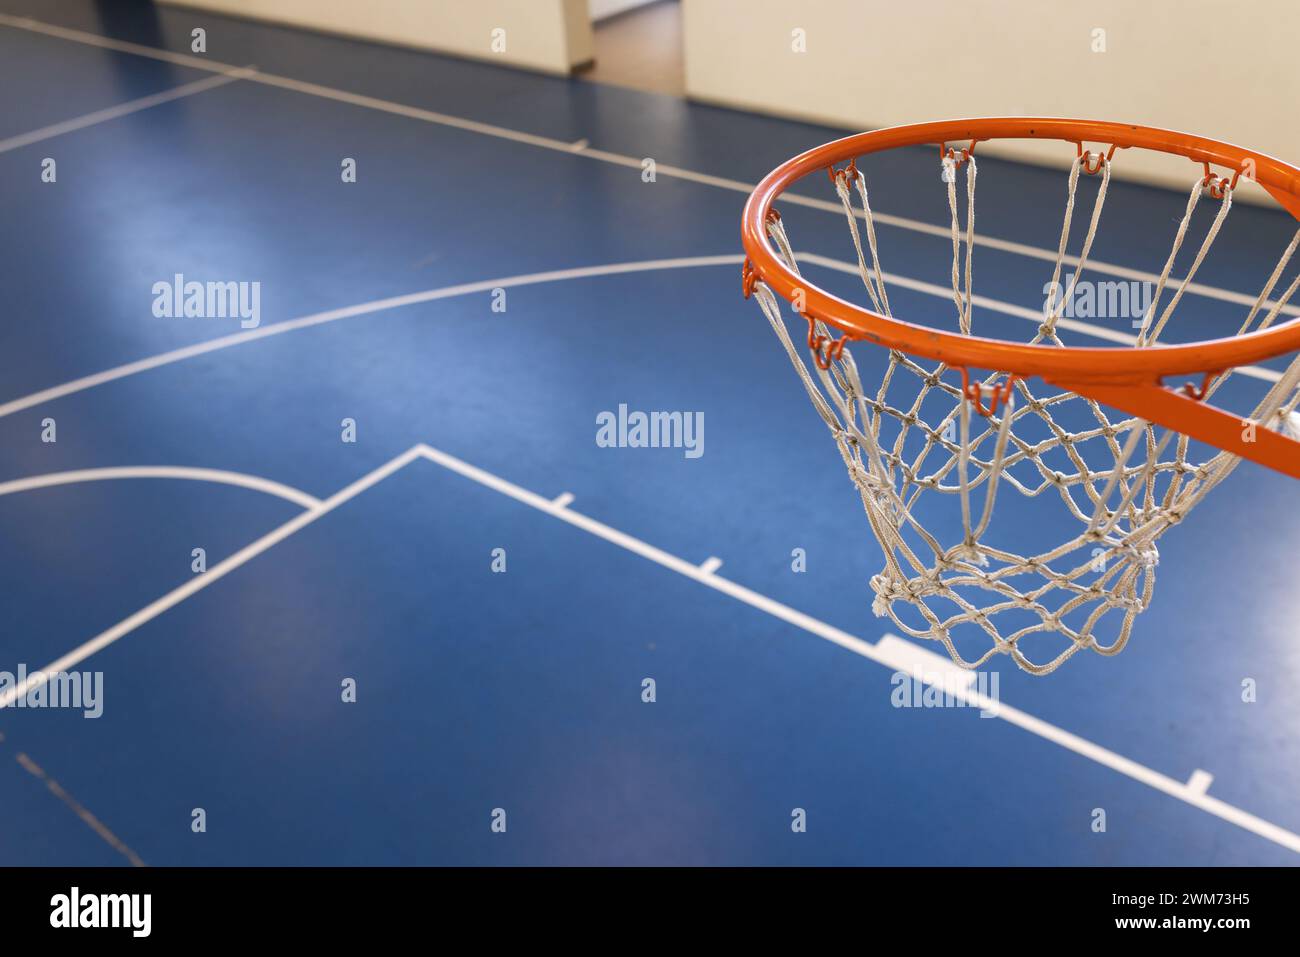 Ein Basketballkorb steht für Action in einem Fitnessstudio mit Kopierbereich bereit Stockfoto